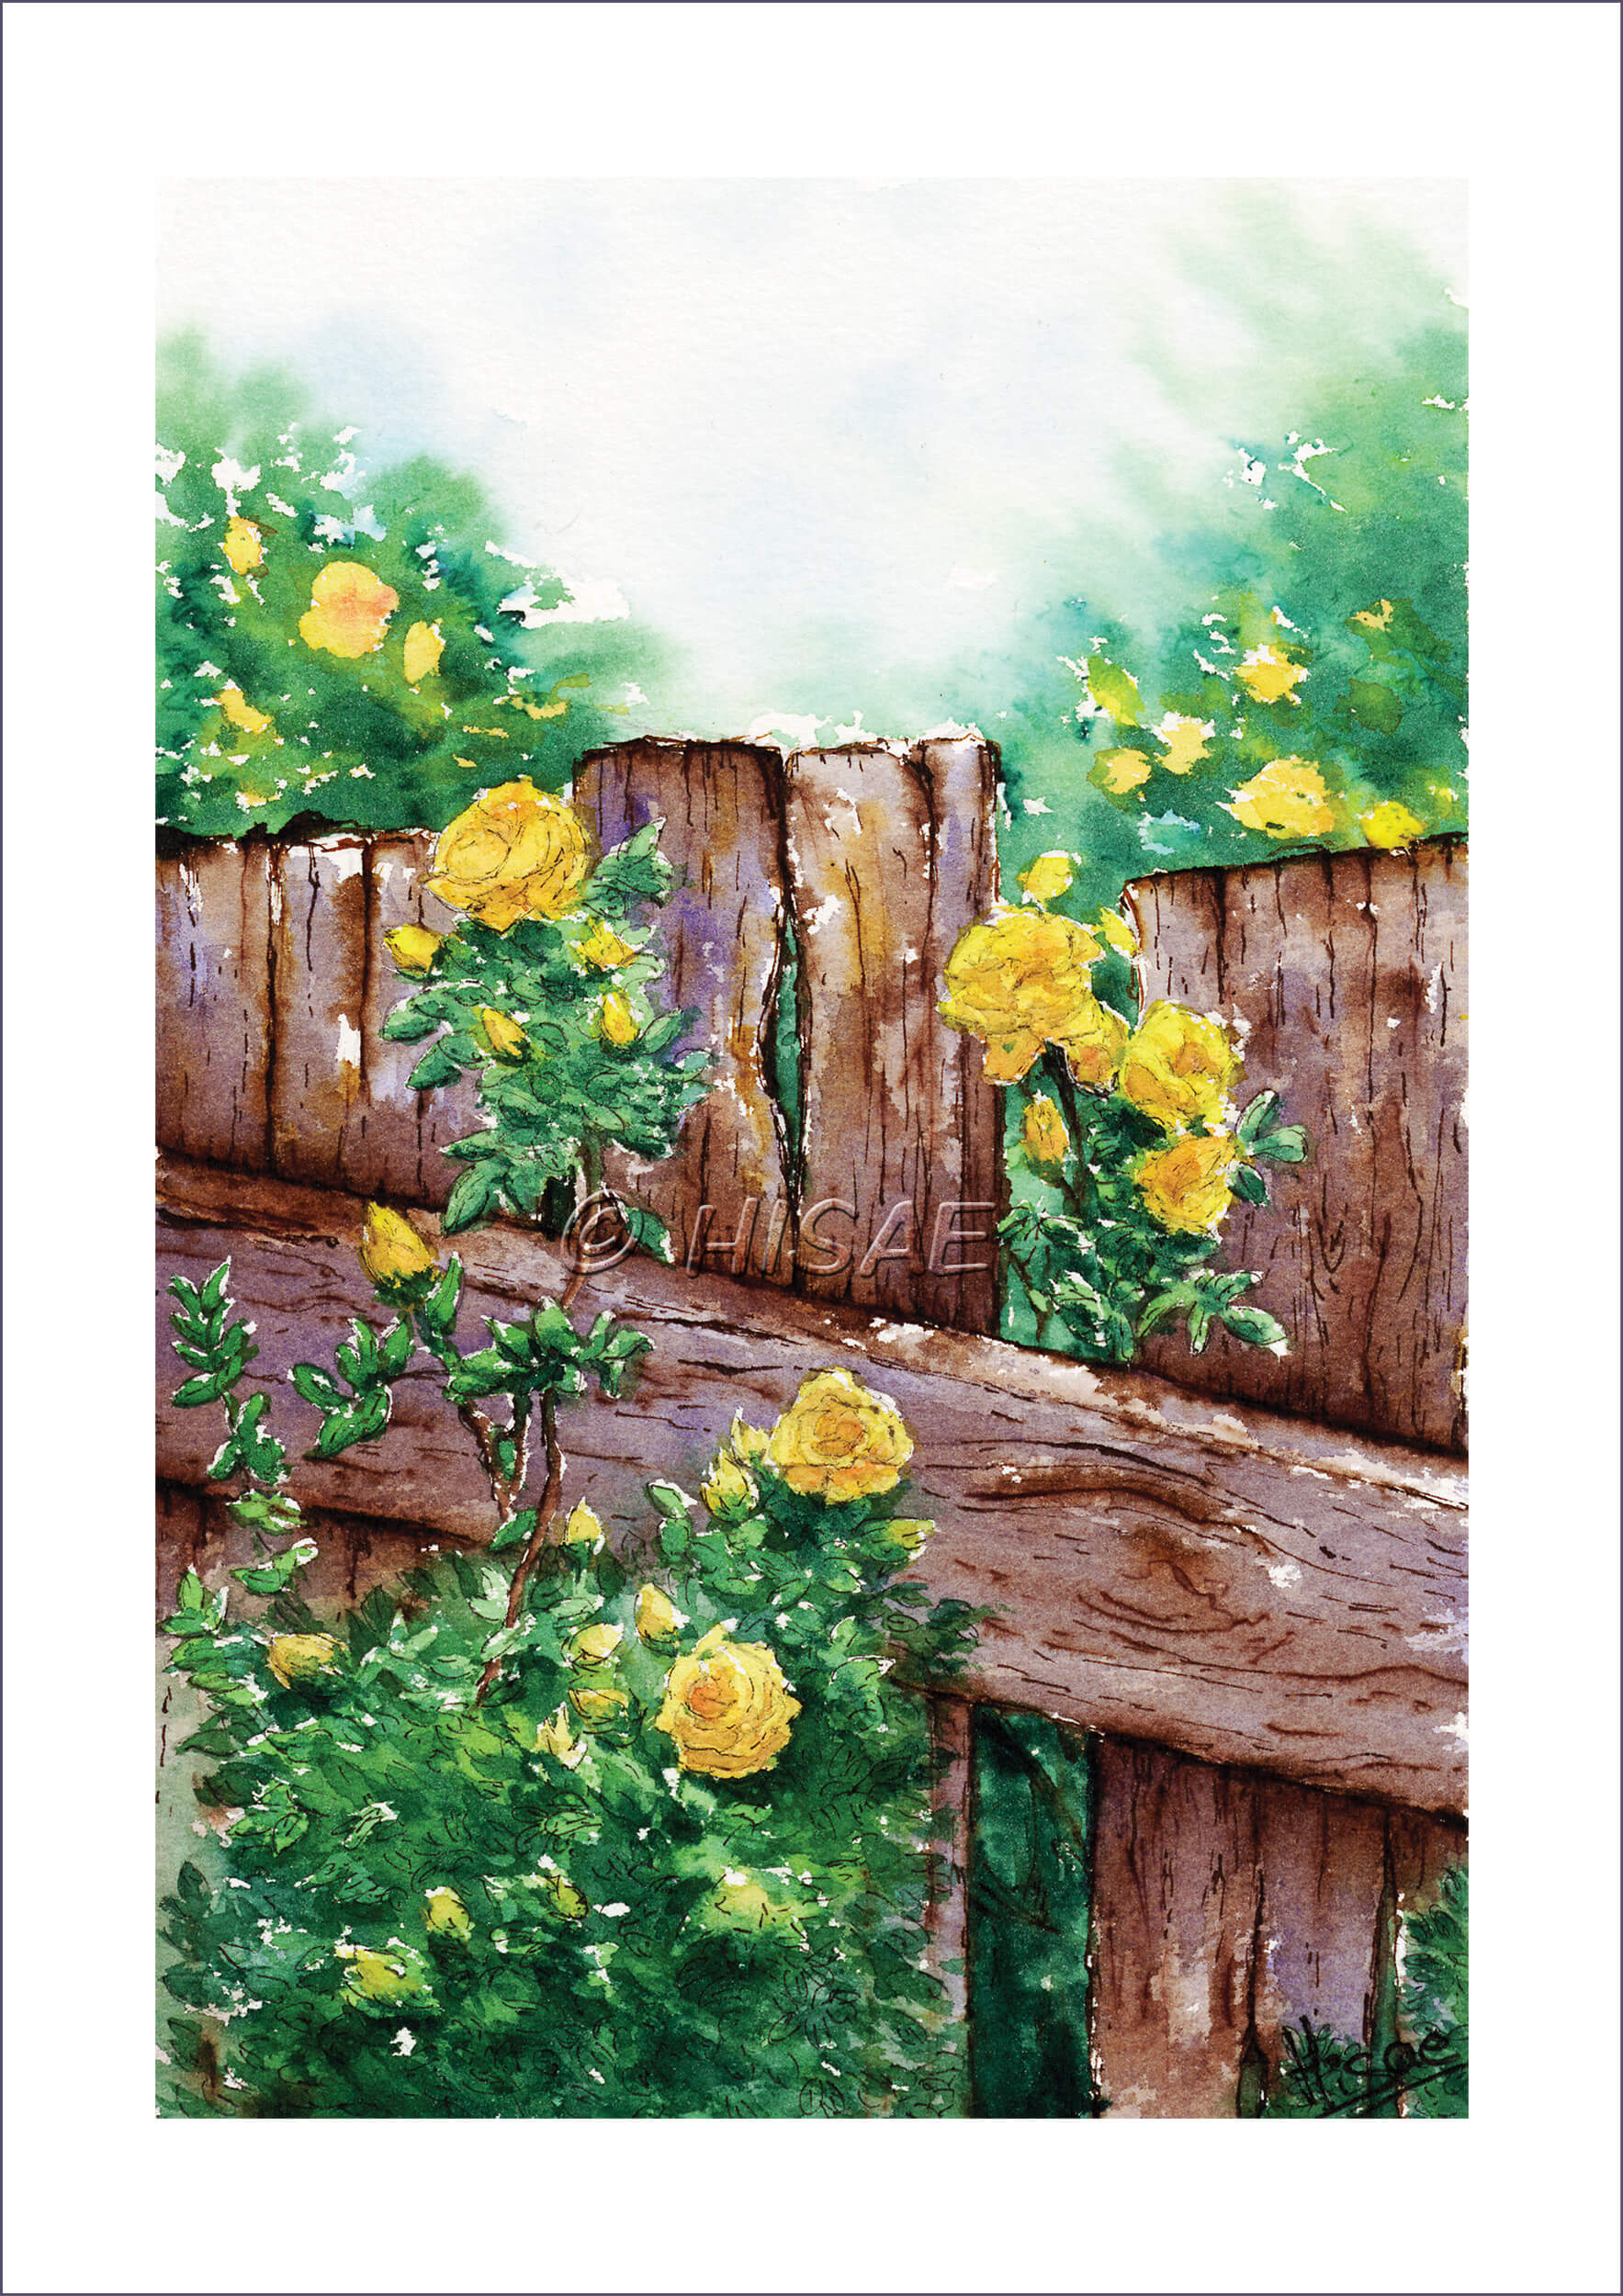 Impression d'un dessin original réalisé à l'encre et à l'aquarelle représentant des roses jaunes grimpant le long d'une barrière en bois @Hisae illustration